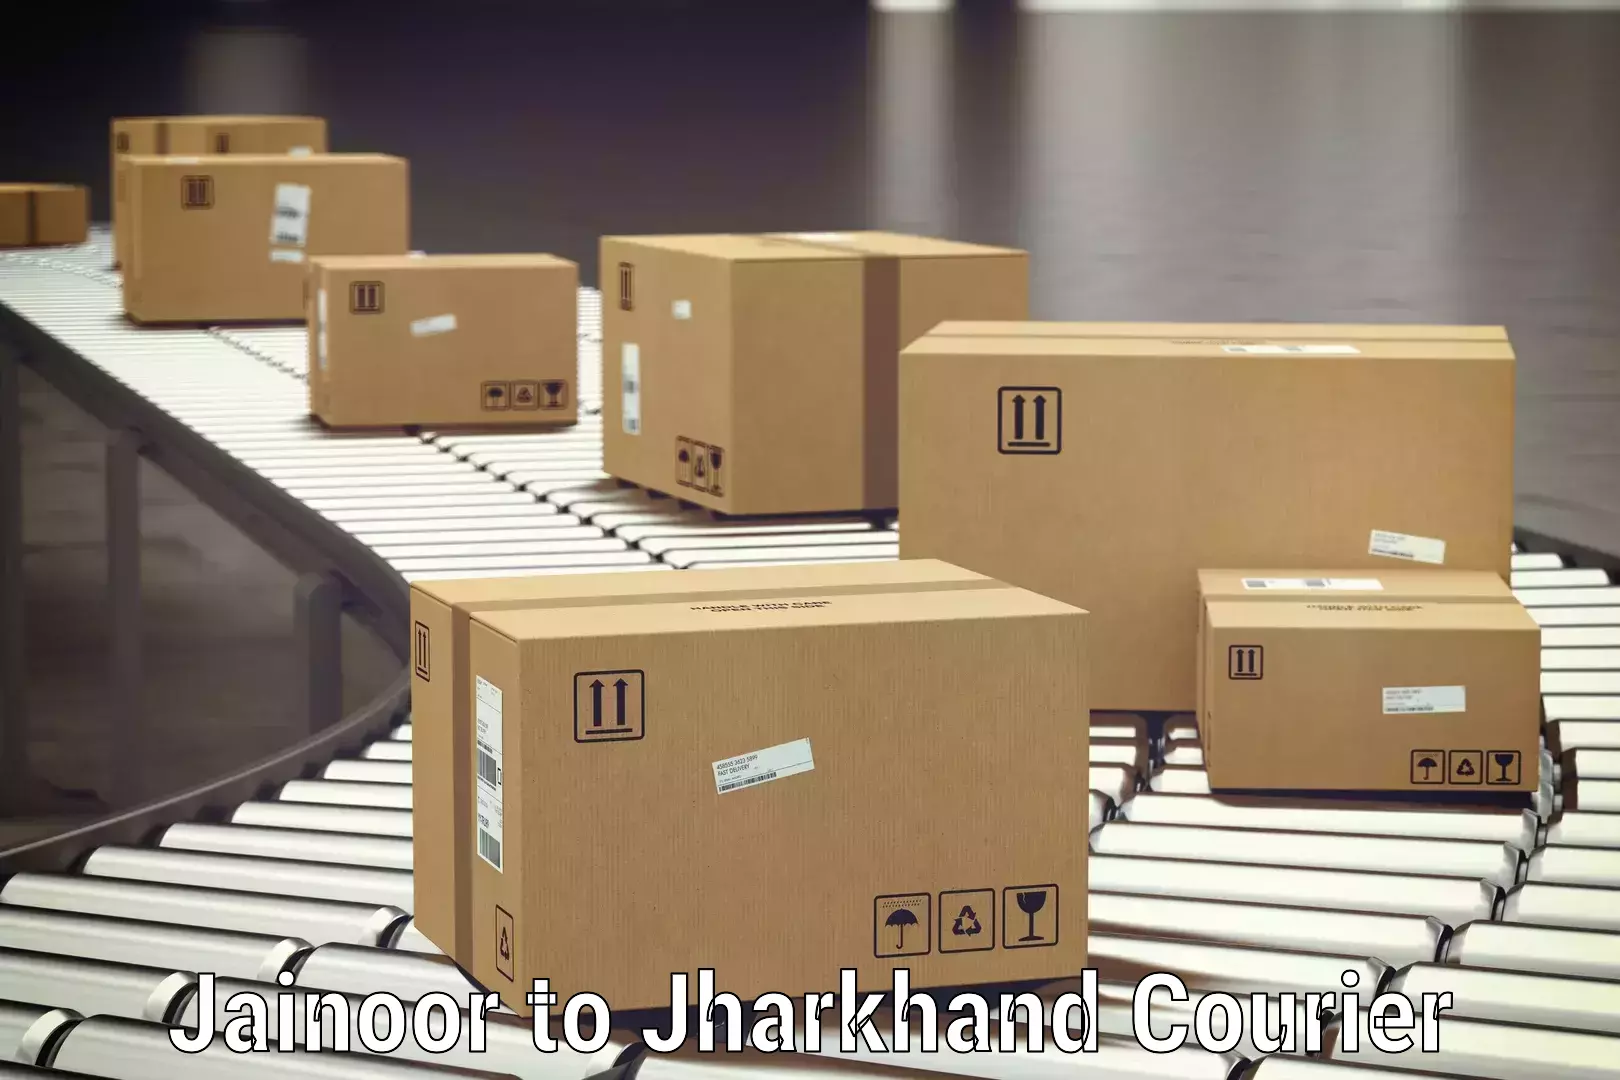 Luggage delivery app Jainoor to Padma Hazaribagh